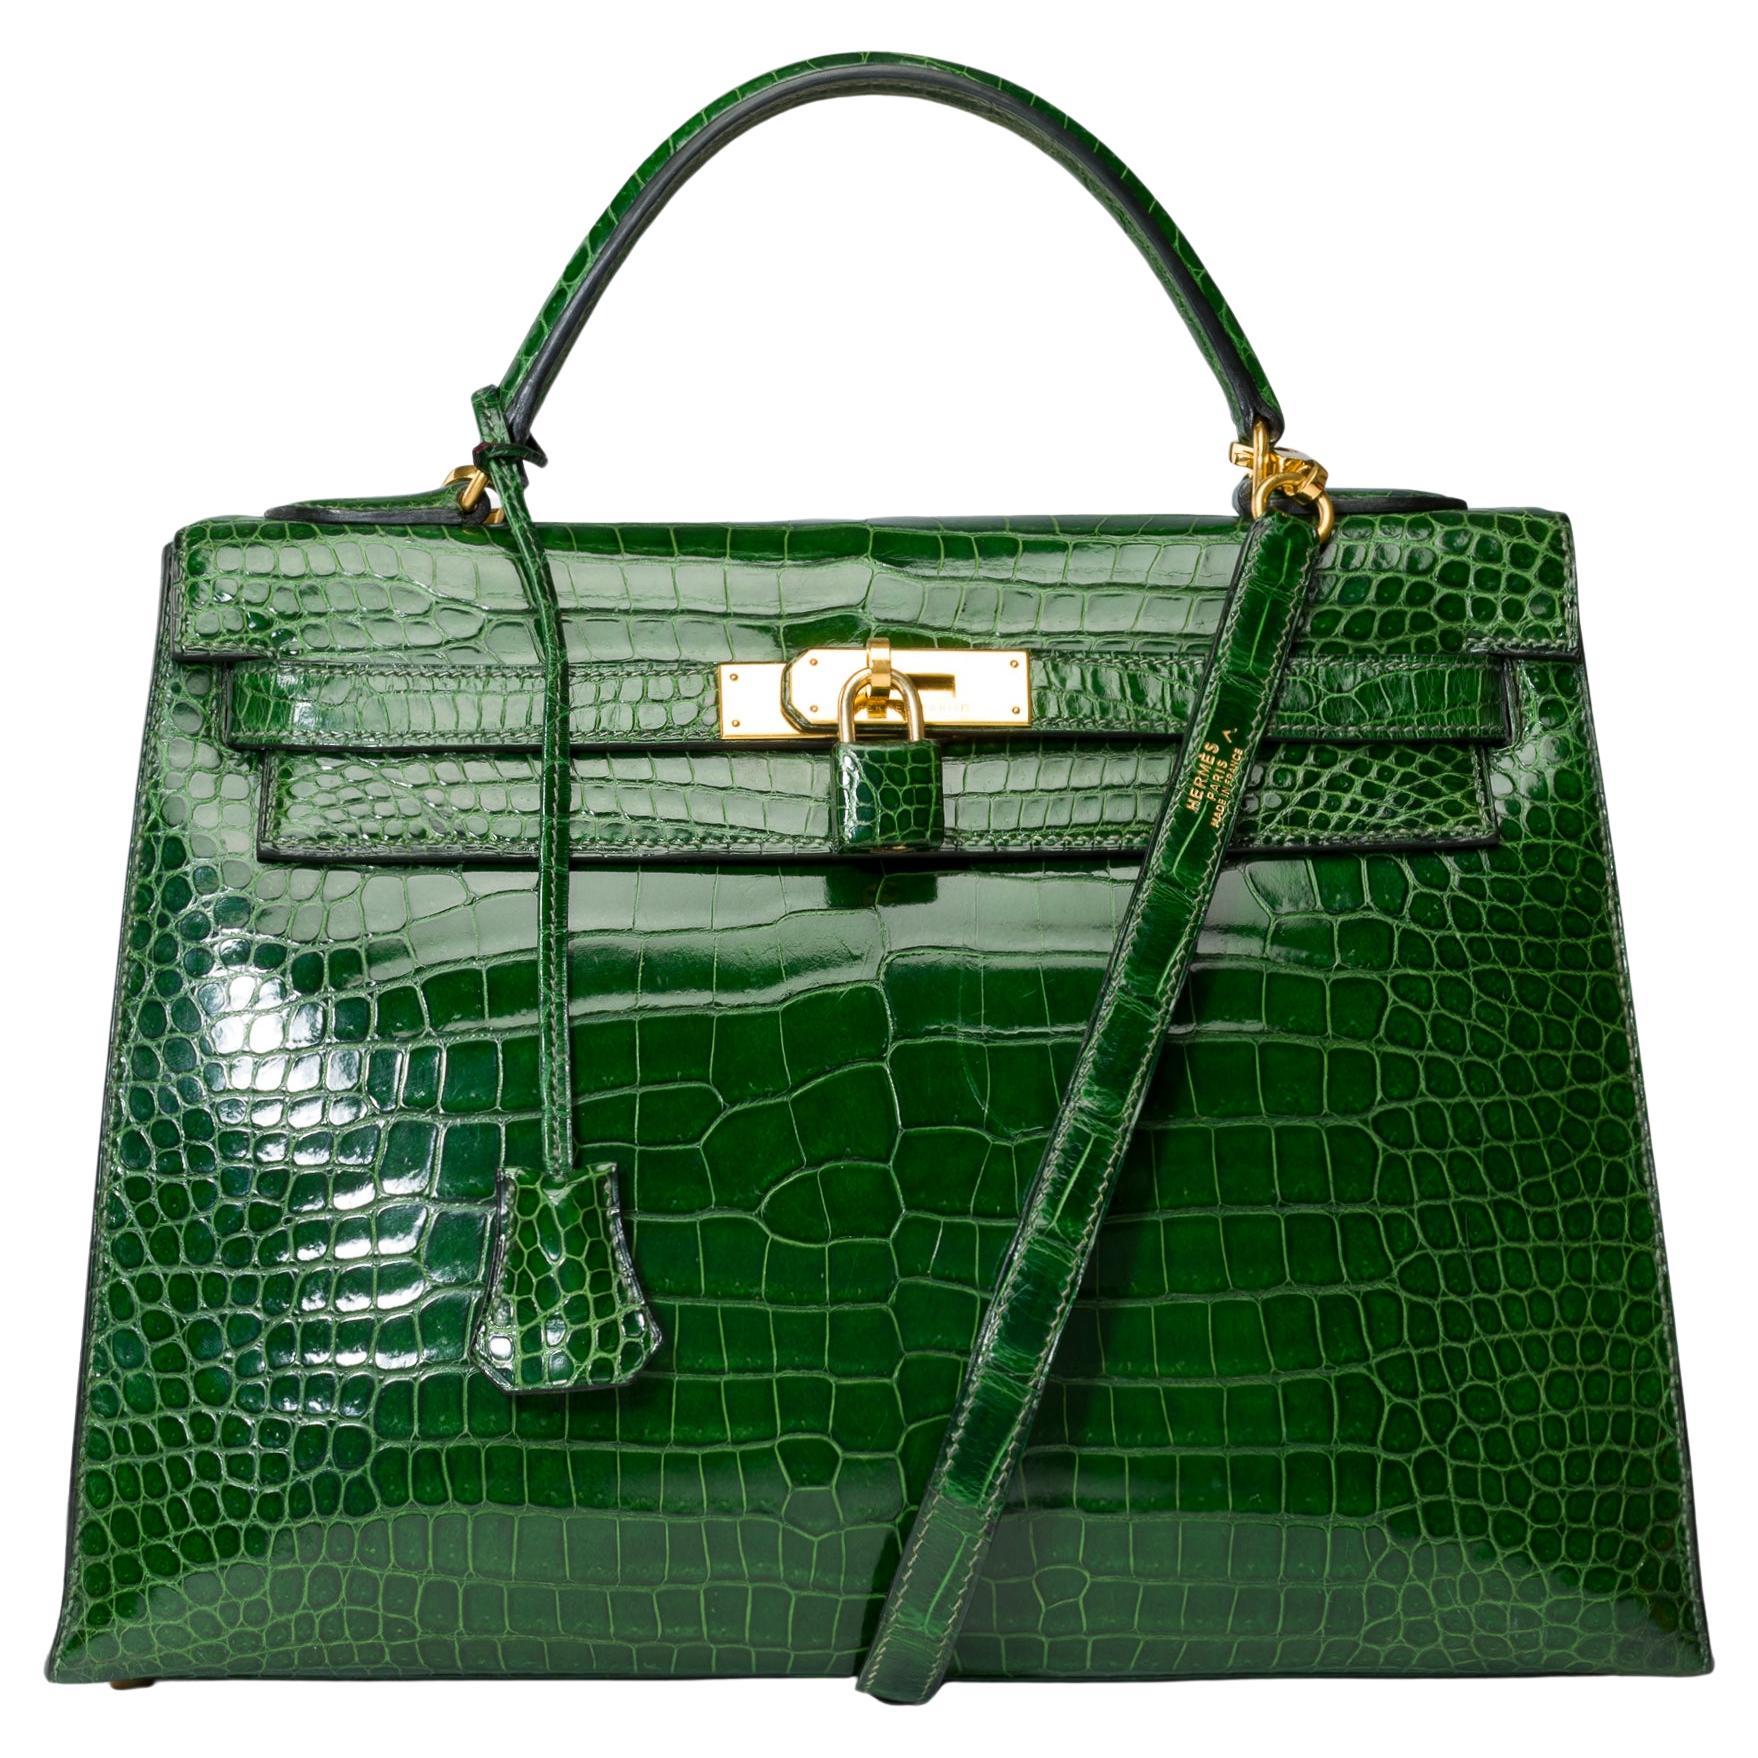 Rare Hermès Kelly 32 saddle handbag strap in Green Emerald Crocodilylus , GHW